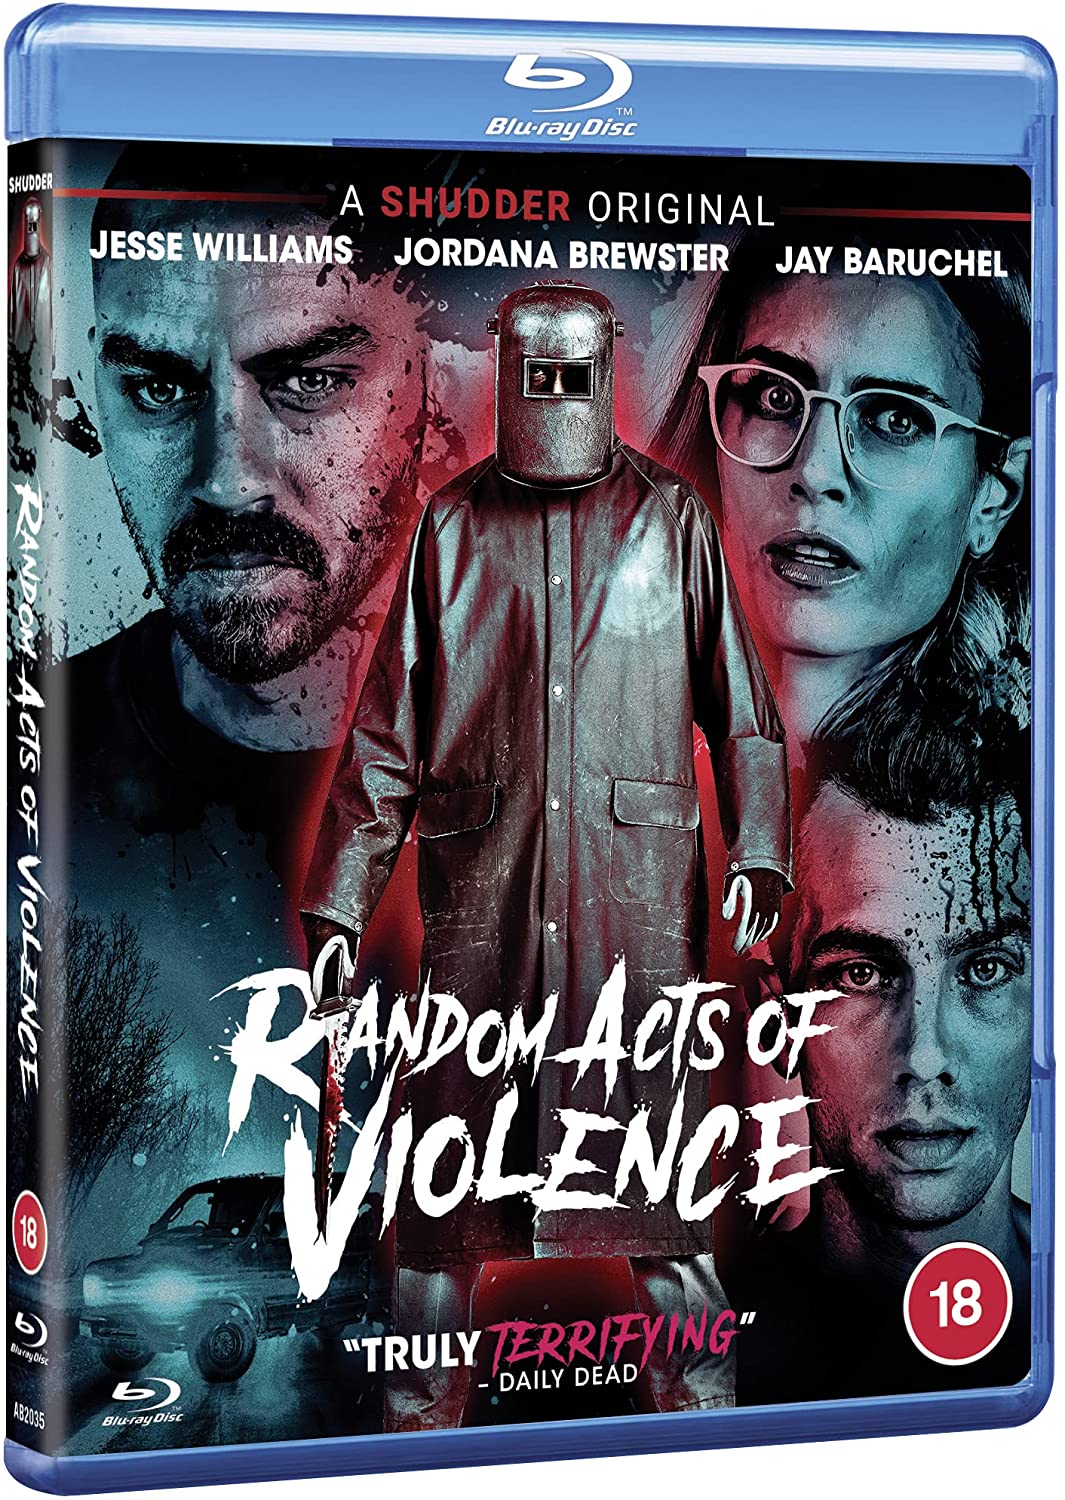 Random Acts of Violence (SHUDDER) [2019] – Horror/Slasher [Blu-ray]